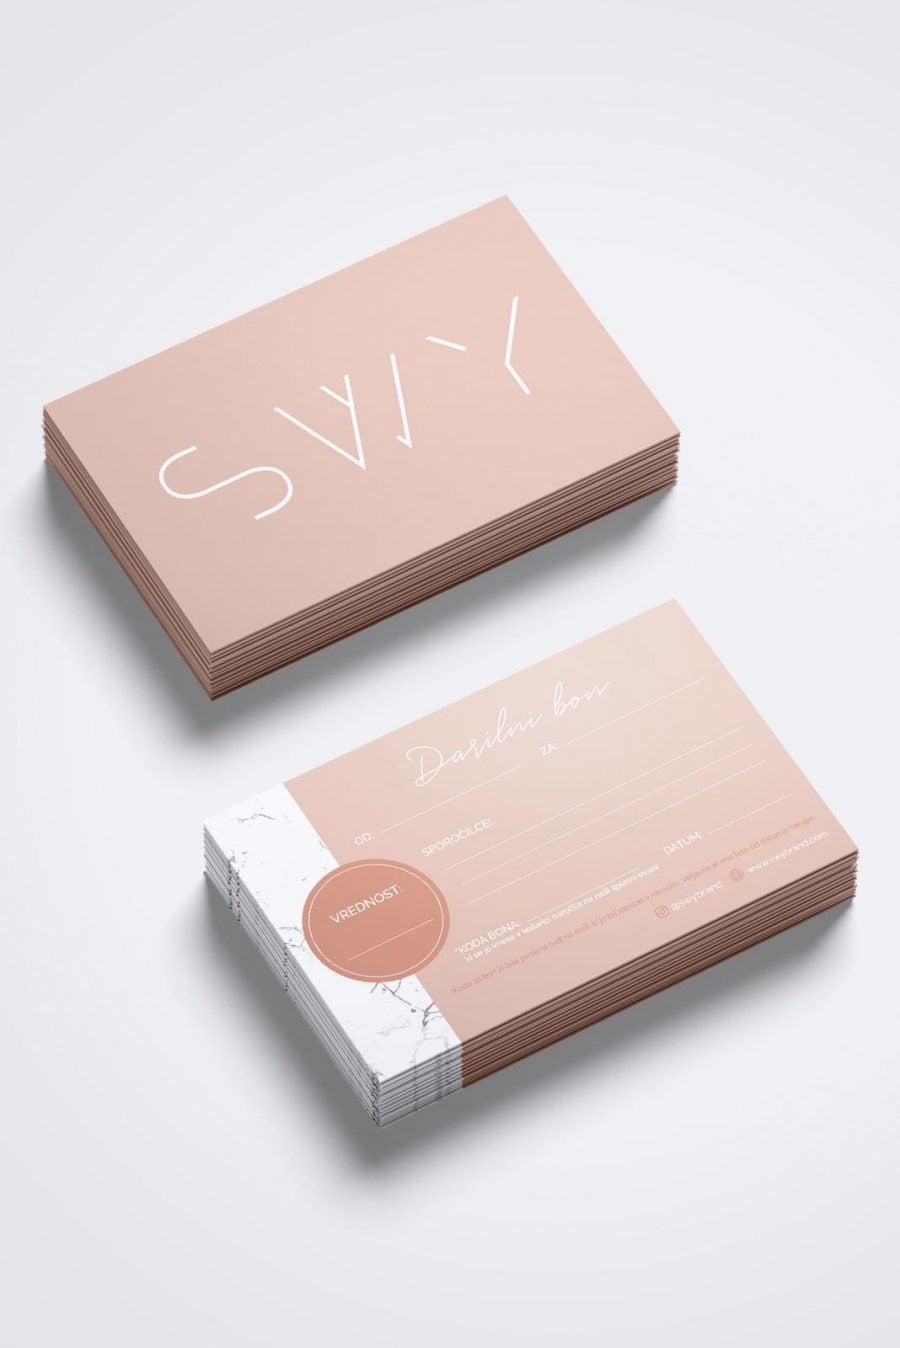 SWY Brand Gift Card, SWY Brand